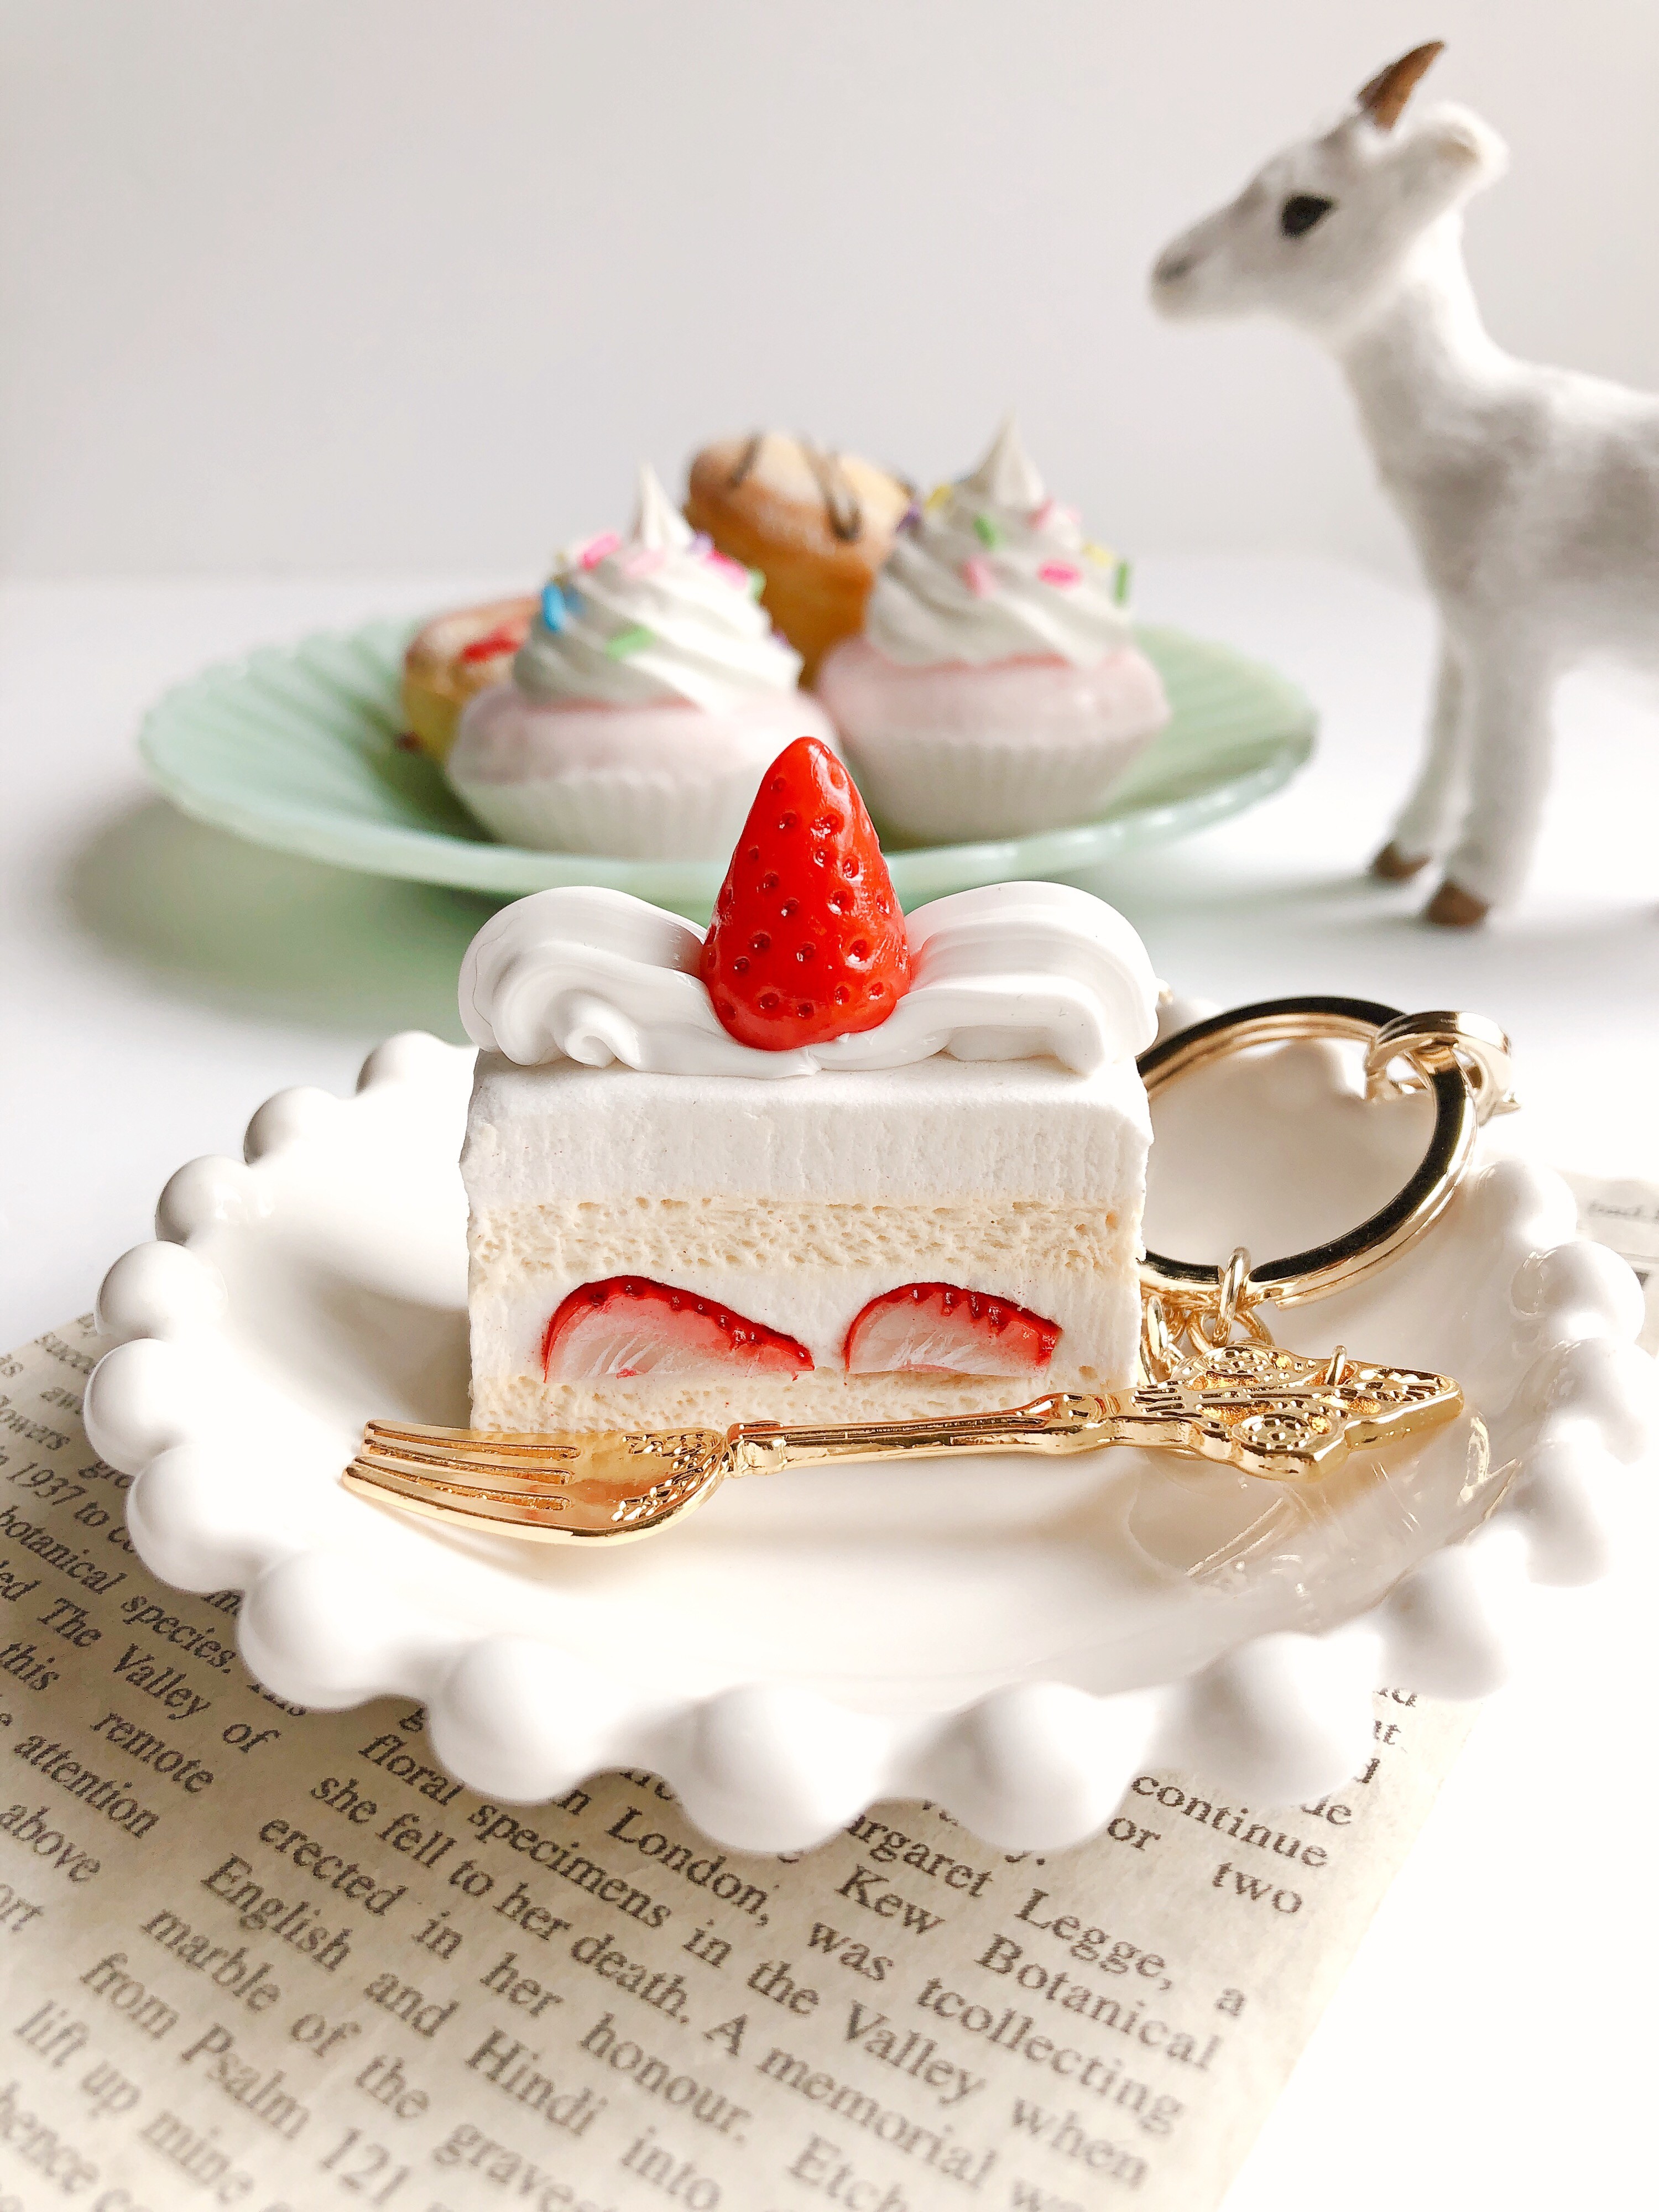 苺のショートケーキ バッグチャーム フェイクスイーツ スイーツデコ Iichi ハンドメイド クラフト作品 手仕事品の通販